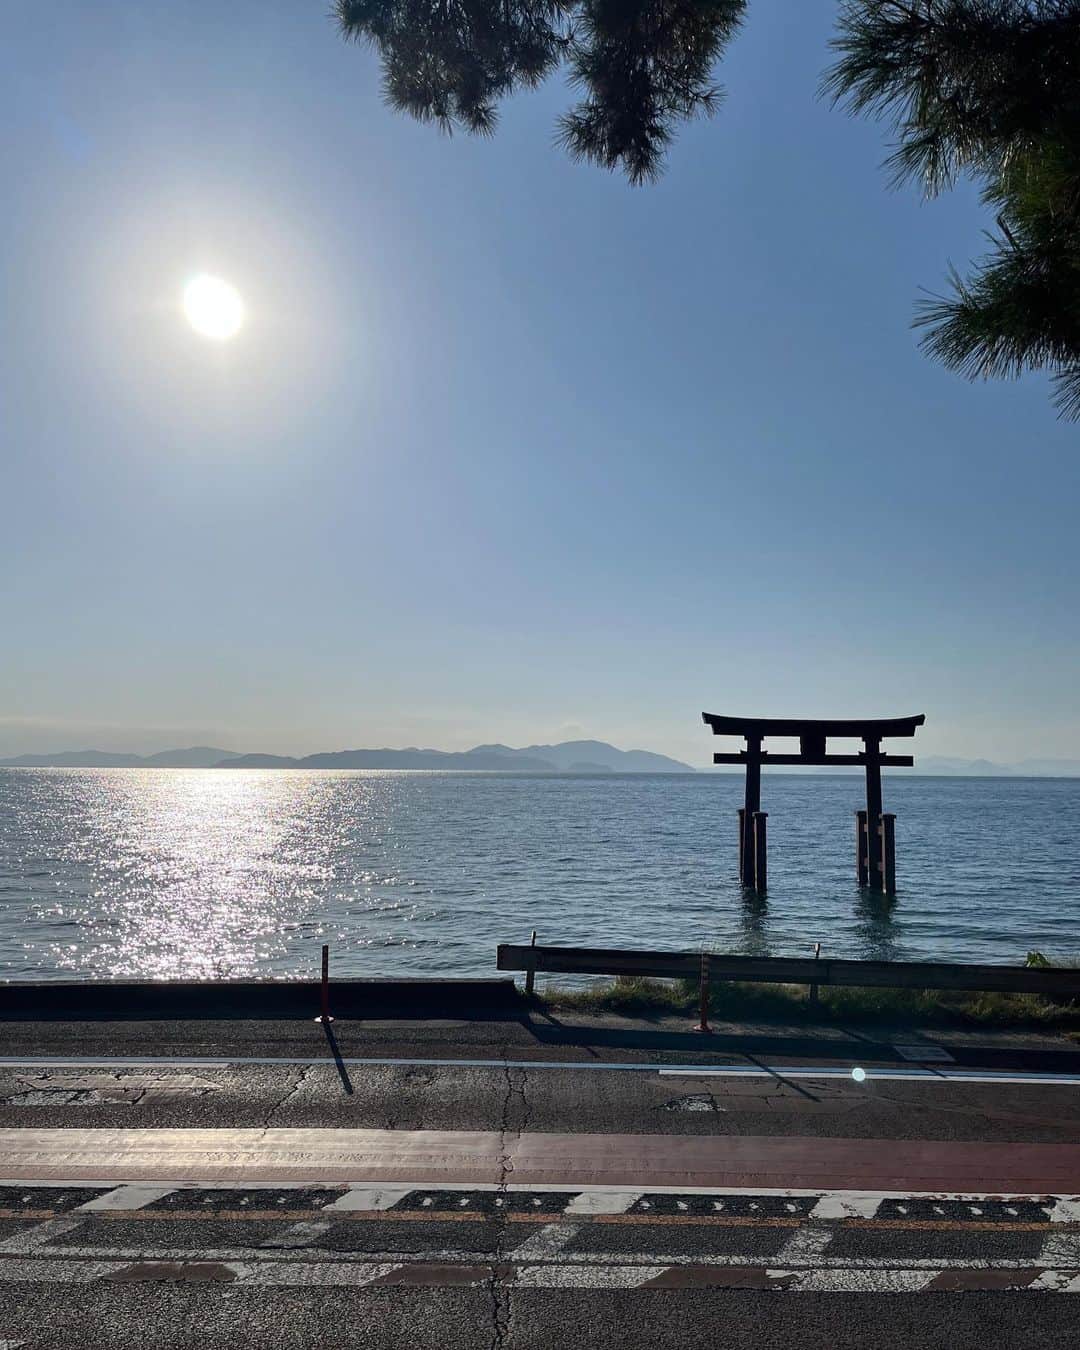 職人.comさんのインスタグラム写真 - (職人.comInstagram)「【ビワイチ】  「ビワイチ」とは「琵琶湖一周」の略称で、日本で一番大きな湖の琵琶湖を自転車で一周することをいいます。先日、ほとんど初めて訪れた滋賀県で、車でビワイチをしてきました。  滋賀県の面積の約6分の1を占める日本最大の湖、琵琶湖。琵琶湖の周りを道路沿いに進むと、一周約200kmあります。自転車でも車でも最短で1日あれば一周することができますが、道中で滋賀県の豊かな自然やグルメなどの寄り道を楽しむためには、1泊2日以上あると安心です。滋賀県は、琵琶湖を中心に湖東・湖西・湖南・湖北などのエリアに分けられ、そのエリアによって気候も特色も文化も異なるため、琵琶湖を一周するとその違いを感じながら旅ができるのもとても面白いのです。  いくつか立ち寄りスポットをご紹介します。安土城の城下町として発展した近江八幡市は、古い街並みを残しながら洋風建築が点在しています。というのも、近江八幡は、先日ご紹介した山の上ホテルや京都の東華菜館などの設計も手がけた著名な建築家、ウィリアム・メレル・ヴォーリズが愛し、拠点としていた街なのです。街を歩きながら、旧八幡郵便局やヴォーリズ建築記念館などヴォーリズ建築めぐりも楽しむことができます。同じく近江八幡市には、滋賀県民なら誰もが知るという菓子店「たねや」のフラッグシップ店である「ラ コリーナ近江八幡」という大きな施設があります。山々の風景になじむ高麗芝の大きな三角屋根が印象的なこちらの建築、設計は藤森照信氏で、お菓子屋さんながら中はテーマパークのようで子どもから大人まで楽しめる場所でした。  湖東の彦根市の彦根城ではひこにゃんが出没していたり、湖北の長浜市のガラスの街「黒壁スクエア」にはガラスショップや伝統的建造物群が軒を連ね、散策や食べ歩きを楽しむ人々でにぎわいます。湖西の高島市にある「メタセコイア並木」では、訪れた際は朝日に照らされて黄金色に染まる秋の木々を見ることができ、青空とのコントラストがとても美しかったです。琵琶湖に佇む大鳥居を望むことができる「白鬚神社」は、ビワイチをする方にとってはおそらく定番のフォトスポットですが、小さな展望台ができ、道路を横断せずに安全に眺められるよう工夫されていました。ご当地グルメもよりどりみどり。1951年創業の「つるやパン」の名物「サラダパン」の中に何が入っているかは食べてからのお楽しみ。三大和牛の一つである近江牛や、削り節や昆布でだしをとった黄金色のスープが特徴的な近江ちゃんぽん、湖魚にトライしてみるのも良いかもしれません。  何よりも、湖や山々などの自然の移り変わる表情を眺めながらの移動は飽きることがなく心癒やされ、滋賀県ならではの体験だと思いました。雨風が強い午後の荒ぶる波や、早朝のピンクから水色の淡いグラデーションの静かな湖面。琵琶湖は、時間帯、季節、天候によってさまざまな景色を見せてくれます。関西のおでかけの選択肢の一つとして、体力に自信のある方やサイクリストの方は自転車で、ゆったりと楽しみたい方は車で、バイカーの方はバイクで、秋のビワイチをしてみてはいかがでしょうか。  ビワイチ オフィシャルサイト https://www.biwako1.jp/ ショールームのご案内 https://www.shokunin.com/jp/showroom/  参考資料 https://www.pref.shiga.lg.jp/ippan/kankyoshizen/biwako/gaiyou.html https://shigatoco.com/map/ https://www.biwako-visitors.jp/ https://ja.wikipedia.org/wiki/%E3%83%93%E3%83%AF%E3%82%A4%E3%83%81 https://ja.wikipedia.org/wiki/%E4%B8%89%E5%A4%A7%E5%92%8C%E7%89%9B https://www.biwako-visitors.jp/guide/detail/280/ https://chanpontei.com/ https://www.keihanhotels-resorts.co.jp/biwakohotel/sightseeing/shirahigejinja/  @shokunincom  #職人ドットコム #ビワイチ #琵琶湖 #滋賀県 #自転車旅 #湖東 #湖西 #湖南 #湖北 #近江八幡 #ウィリアムメレルヴォーリズ #たねや #ラコリーナ近江八幡 #彦根城 #ひこにゃん #黒壁スクエア #メタセコイア並木 #白鬚神社 #つるやパン #サラダパン #近江牛 #近江ちゃんぽん #琵琶湖の景色 #秋のビワイチ #ビワコ #ヴォーリズ #ラコリーナ #びわいち #琵琶一 #琵琶湖一周」11月22日 15時30分 - shokunincom